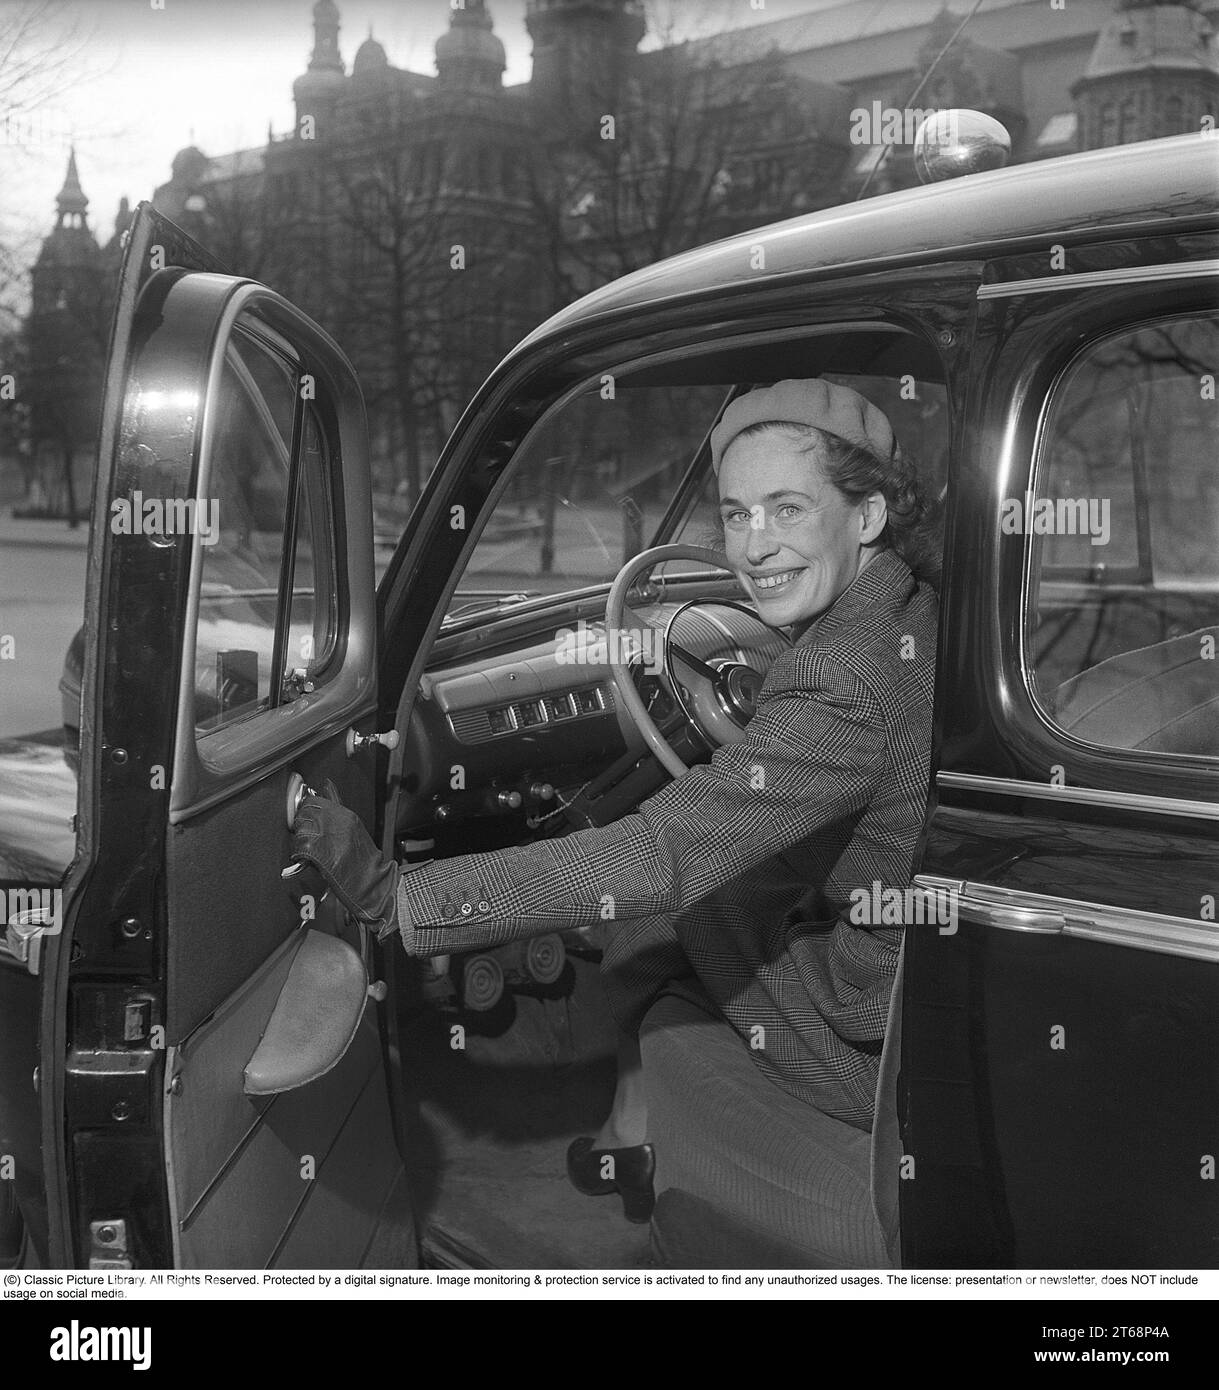 In den 1940er Jahren Eine junge Frau am Steuer ihres Autos der amerikanischen Automobilmarke Ford. Sie trägt einen zweiteiligen Anzug, einen Rock und eine kurze Jacke aus Fischgrätwolle. Das Foto wurde 1949 in Stockholm, Schweden, aufgenommen. Kristoffersson Ref. AY83-12 Stockfoto